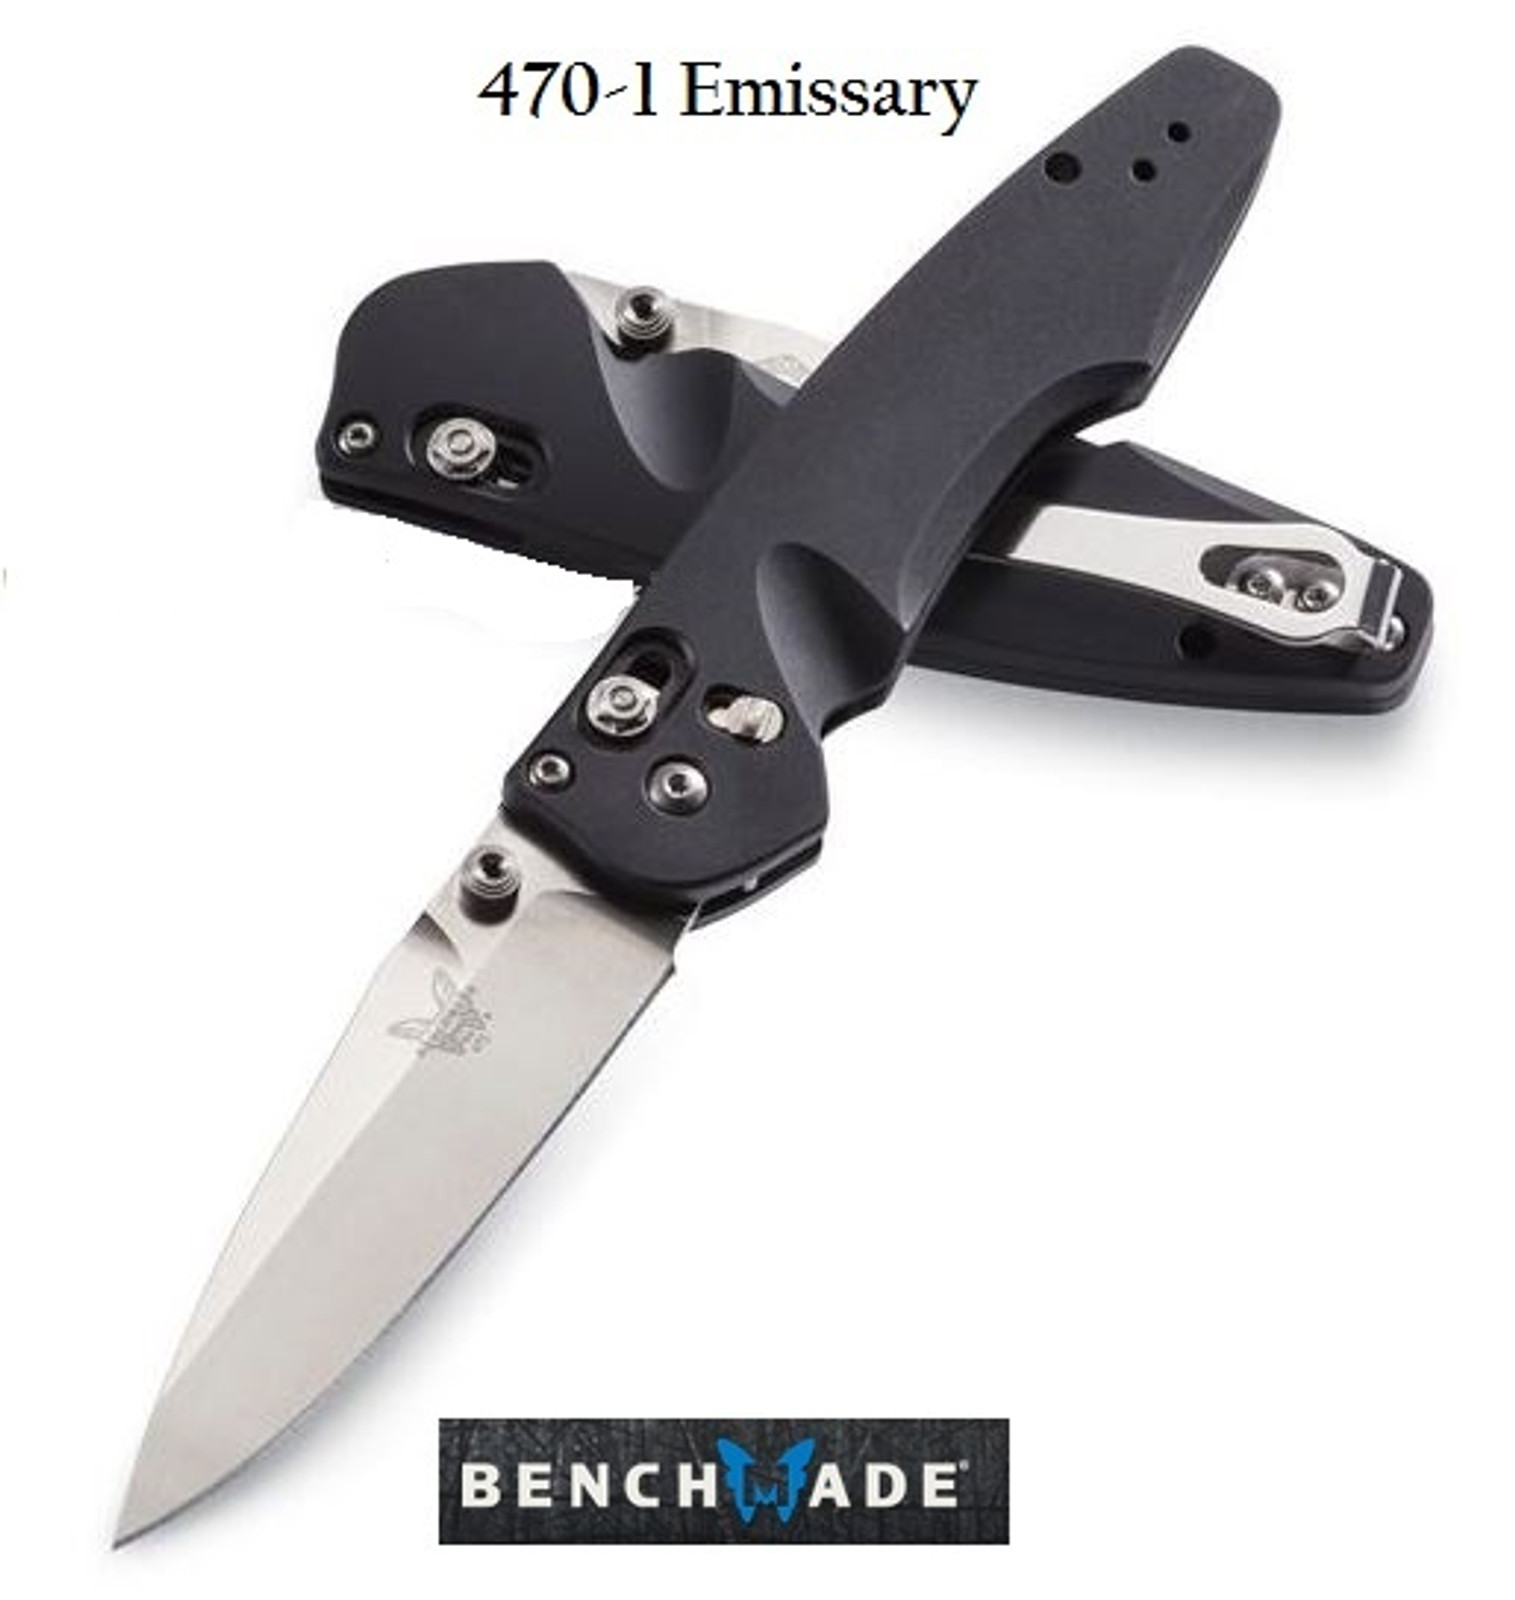 Benchmade Emissary Folding Knife Assisted Opening S30V Aluminum Black